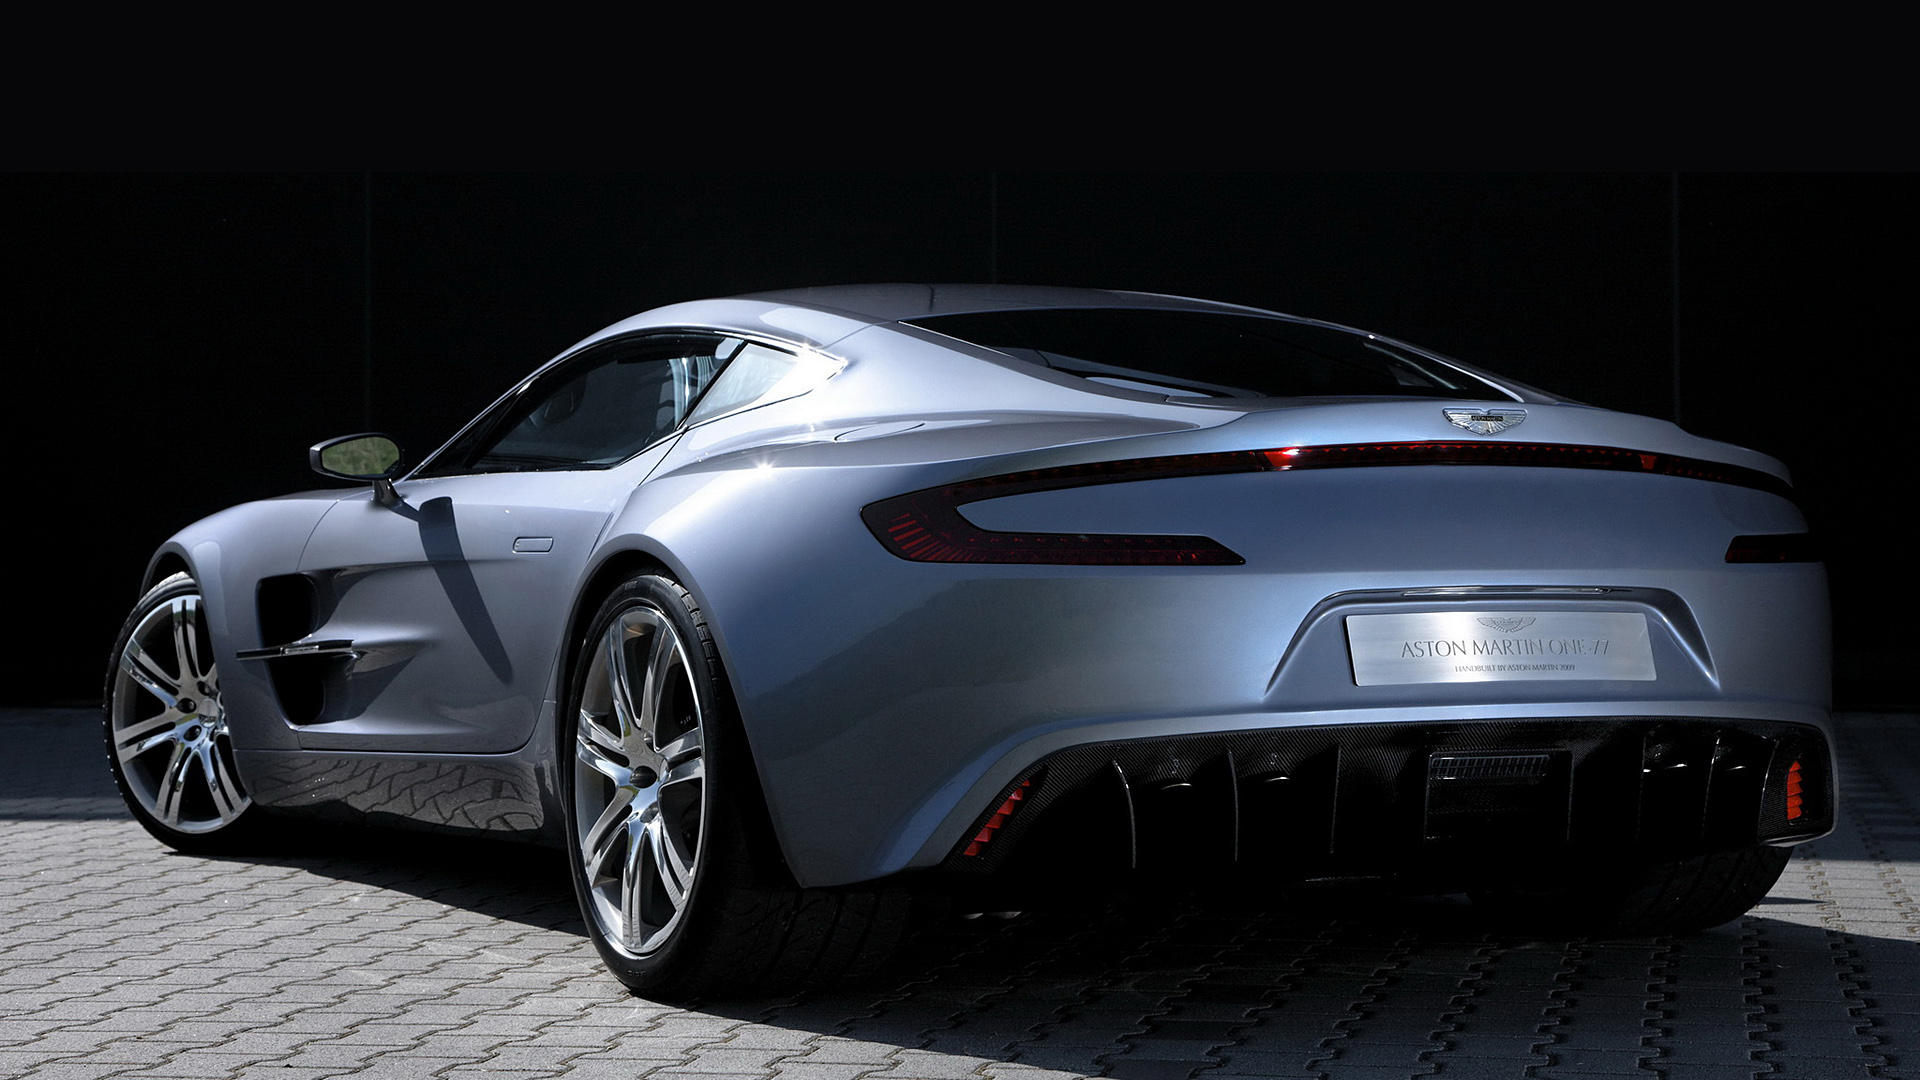 Descarga gratuita de fondo de pantalla para móvil de Aston Martin, Coche, Aston Martin Uno 77, Vehículos, Coupé.